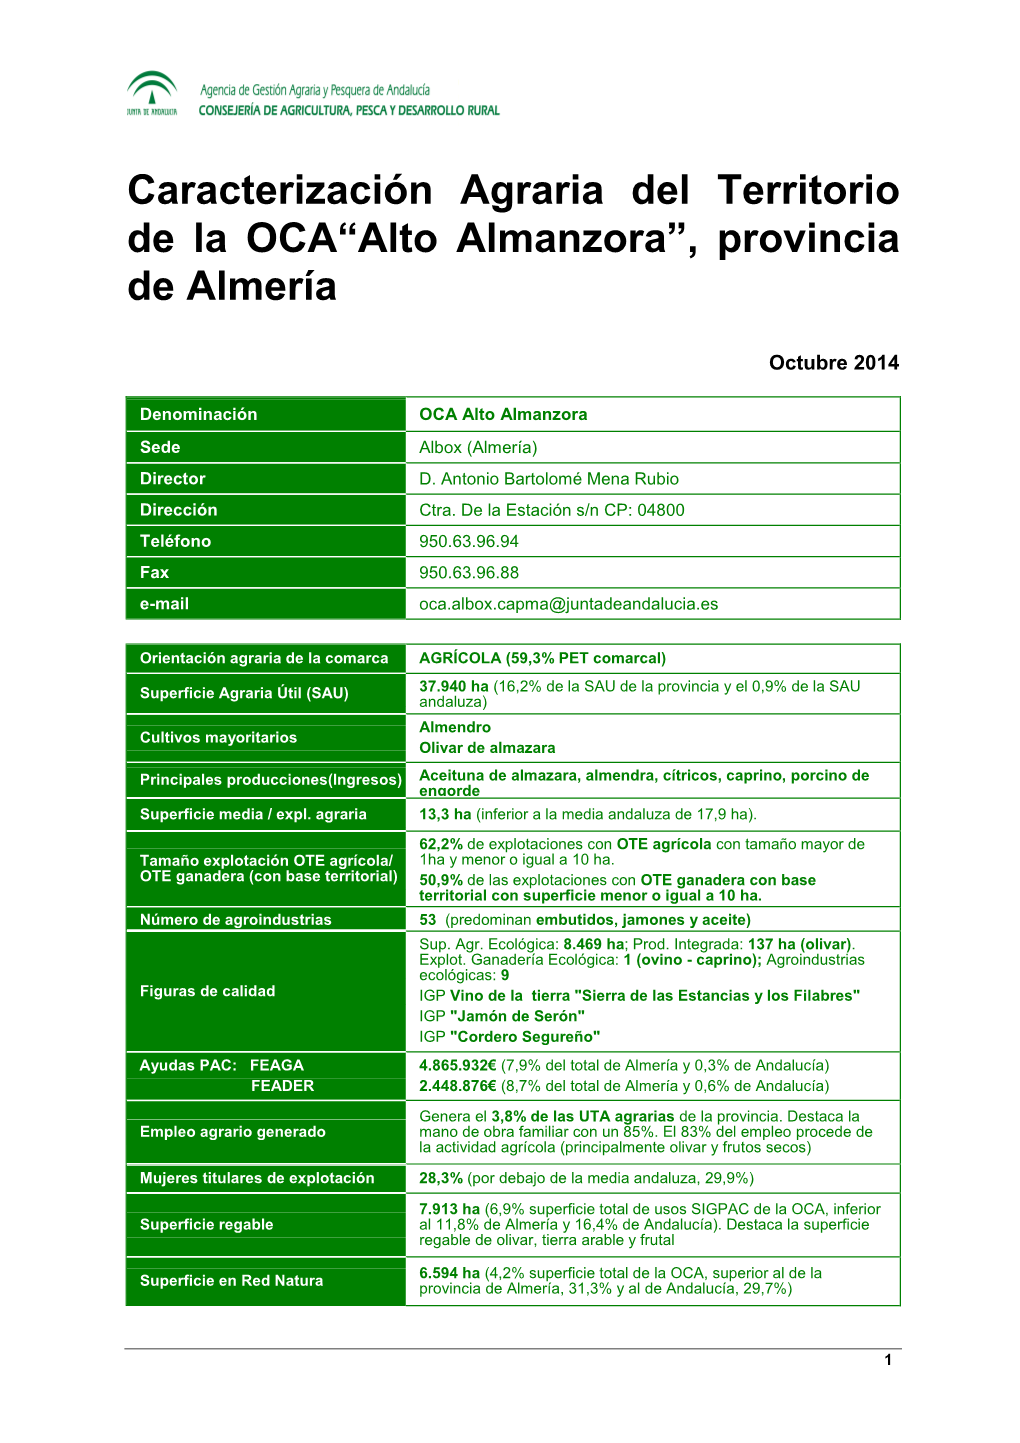 Caracterización Agraria Del Territorio De La OCA“Alto Almanzora”, Provincia De Almería